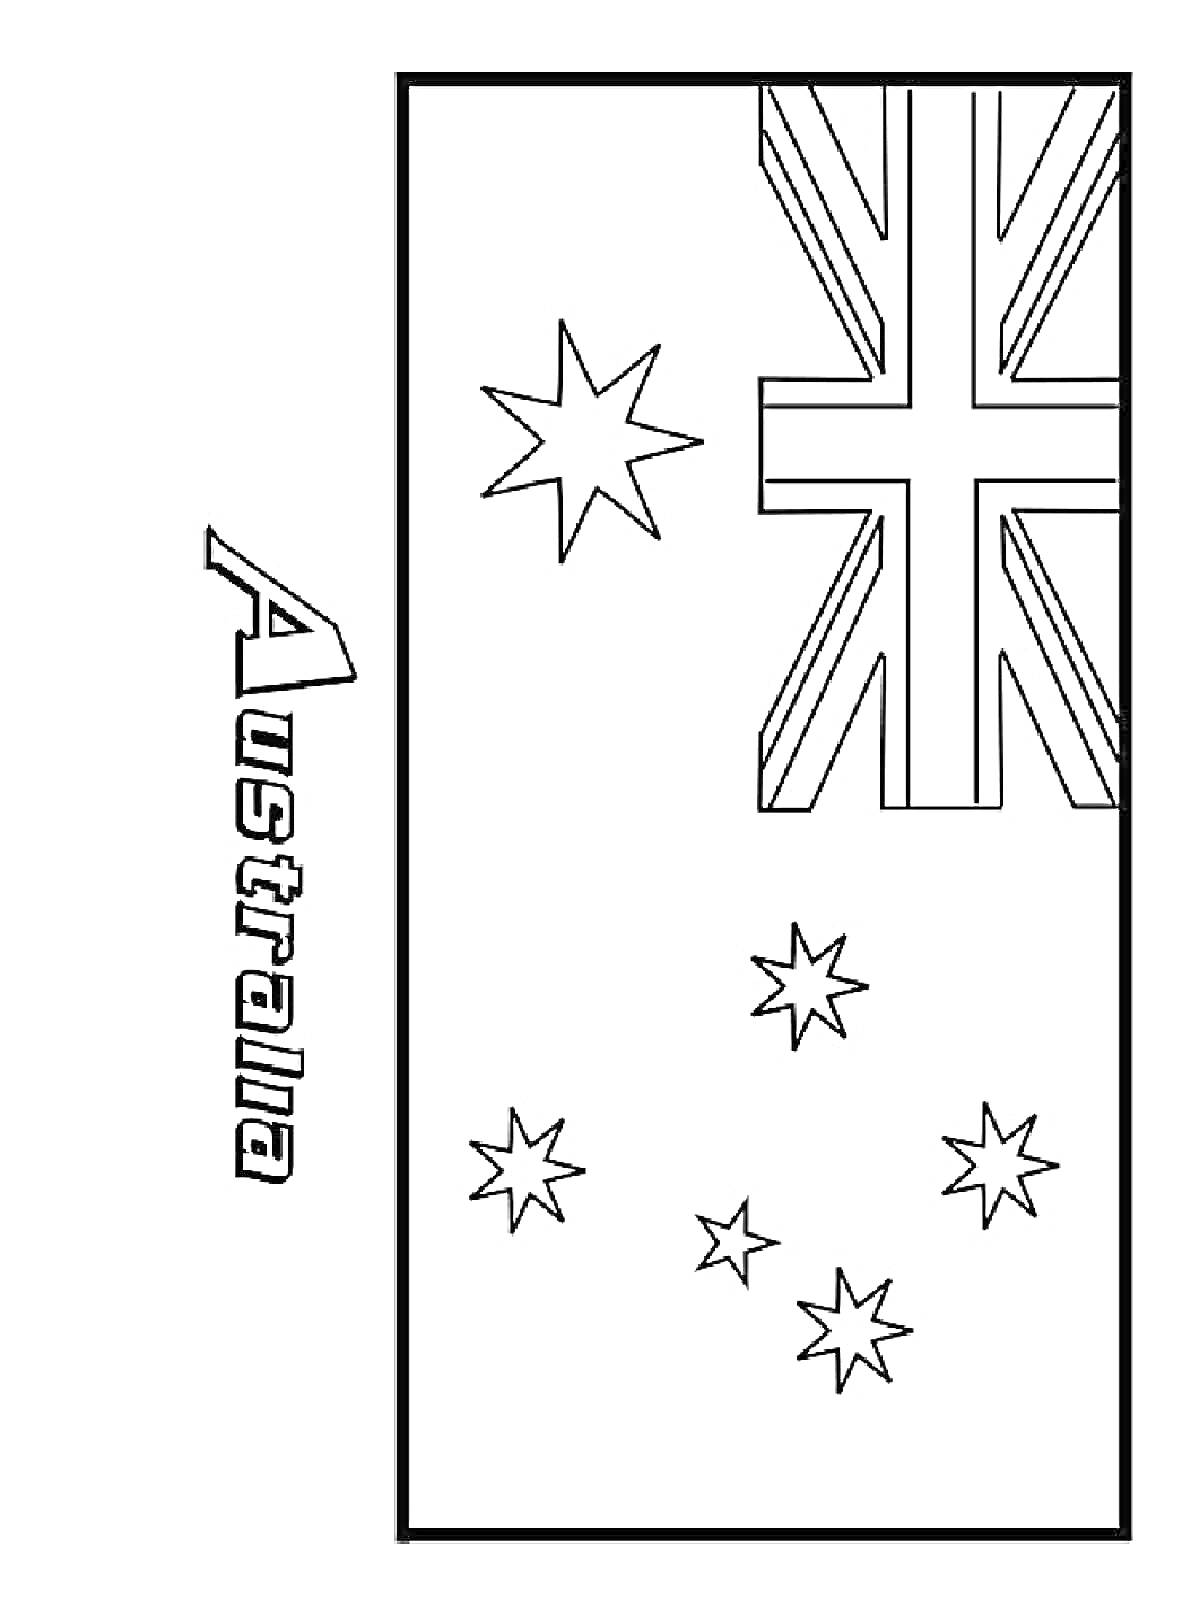 Флаг Австралии с надписью Australia, изображены элементы британского флага в верхнем левом углу и шесть звезд – пять меньших и одна большая.